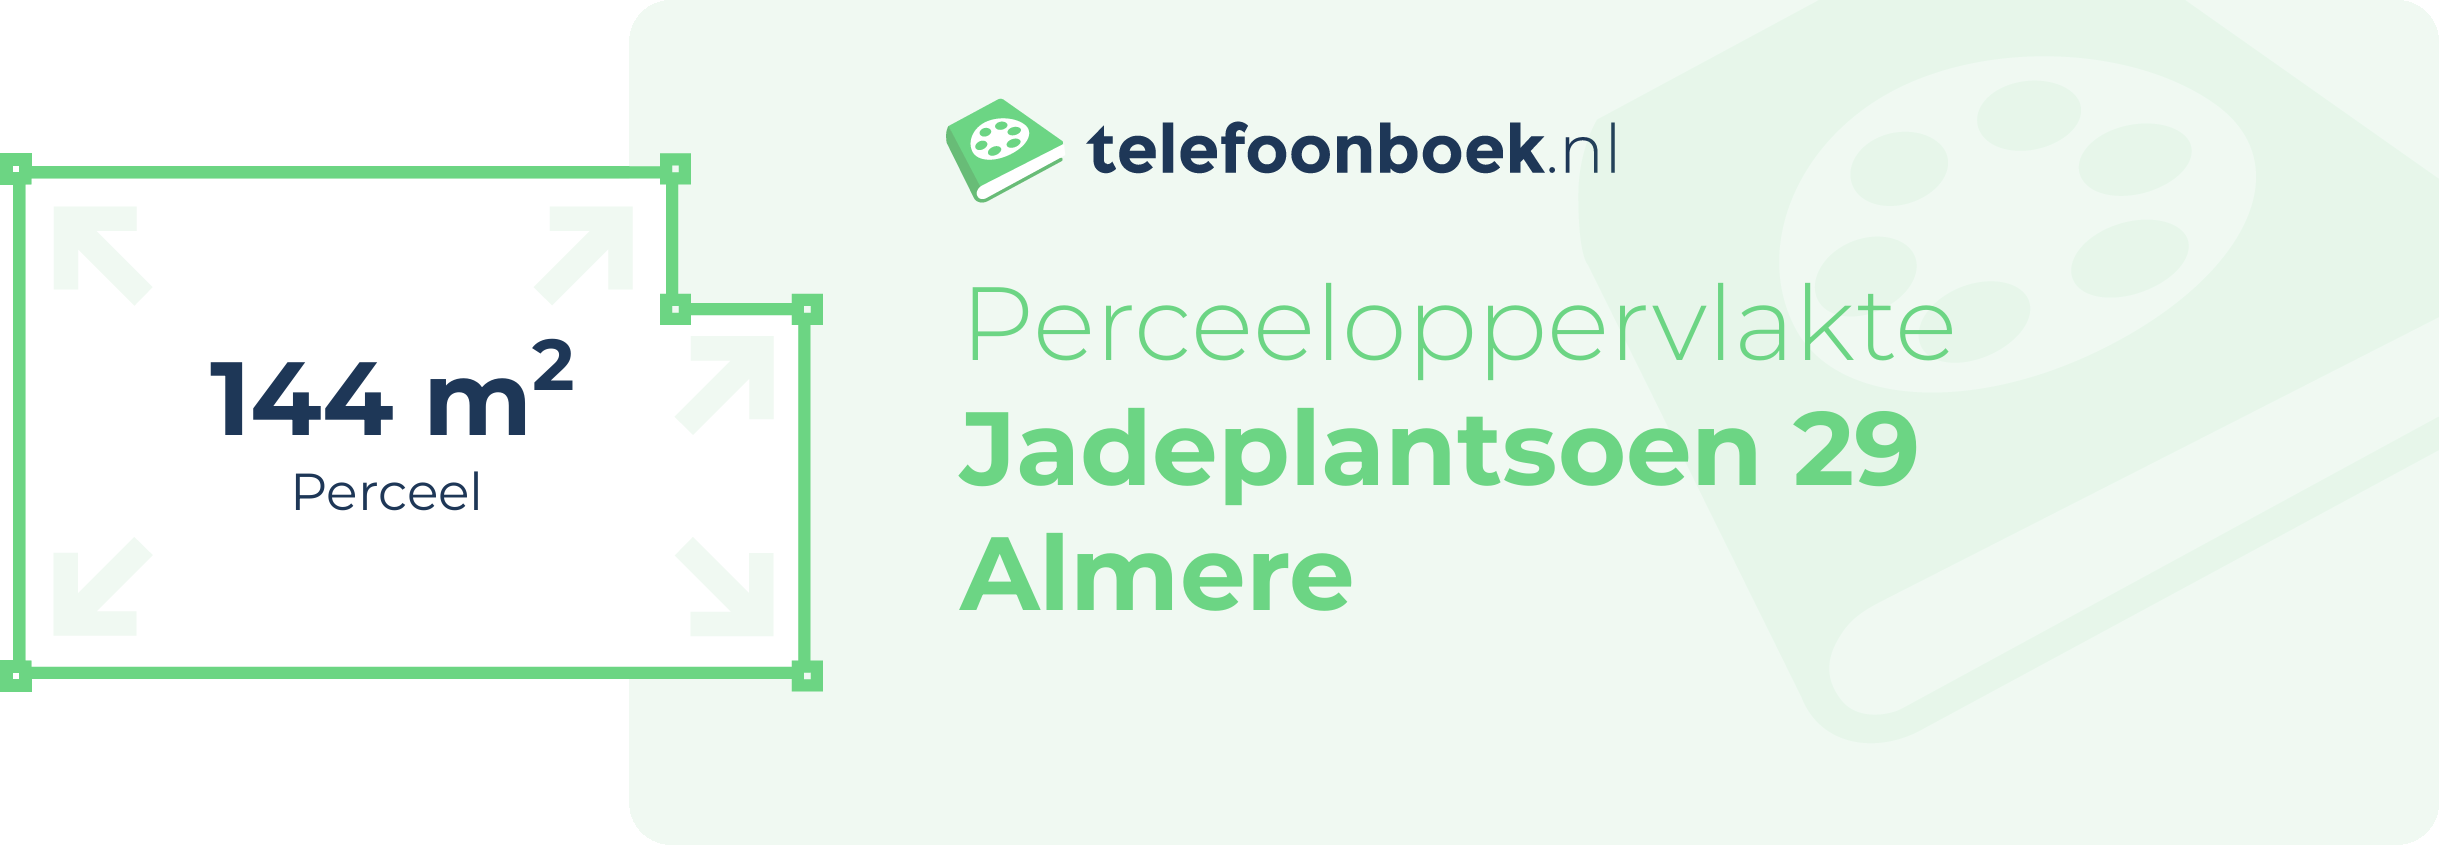 Perceeloppervlakte Jadeplantsoen 29 Almere